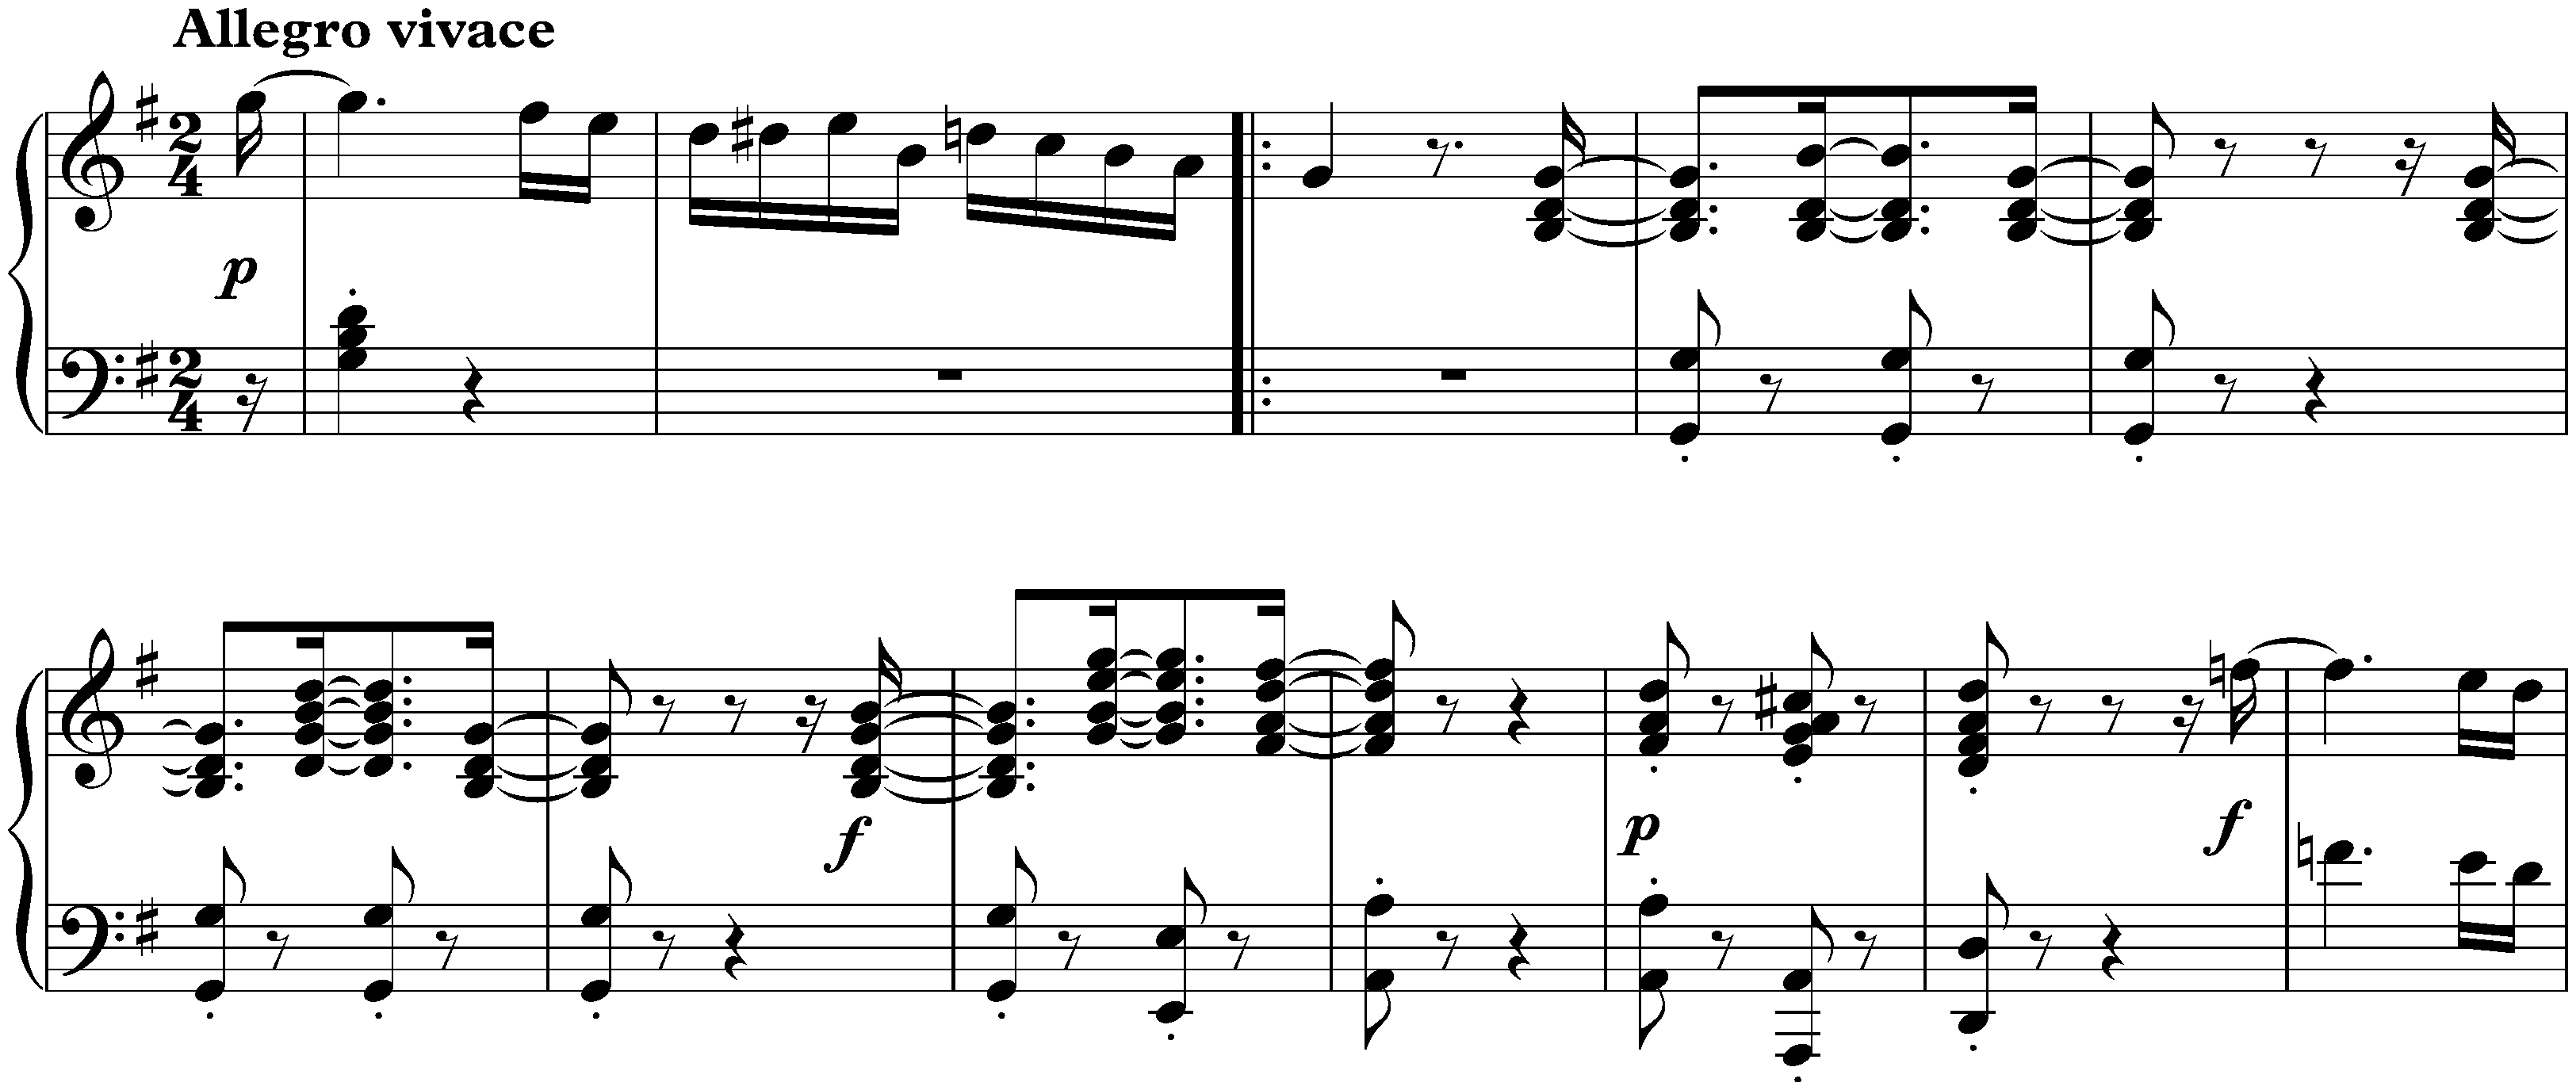 Sonata no. 16 in G major, op. 31 no. 1; 1. Allegro vivace